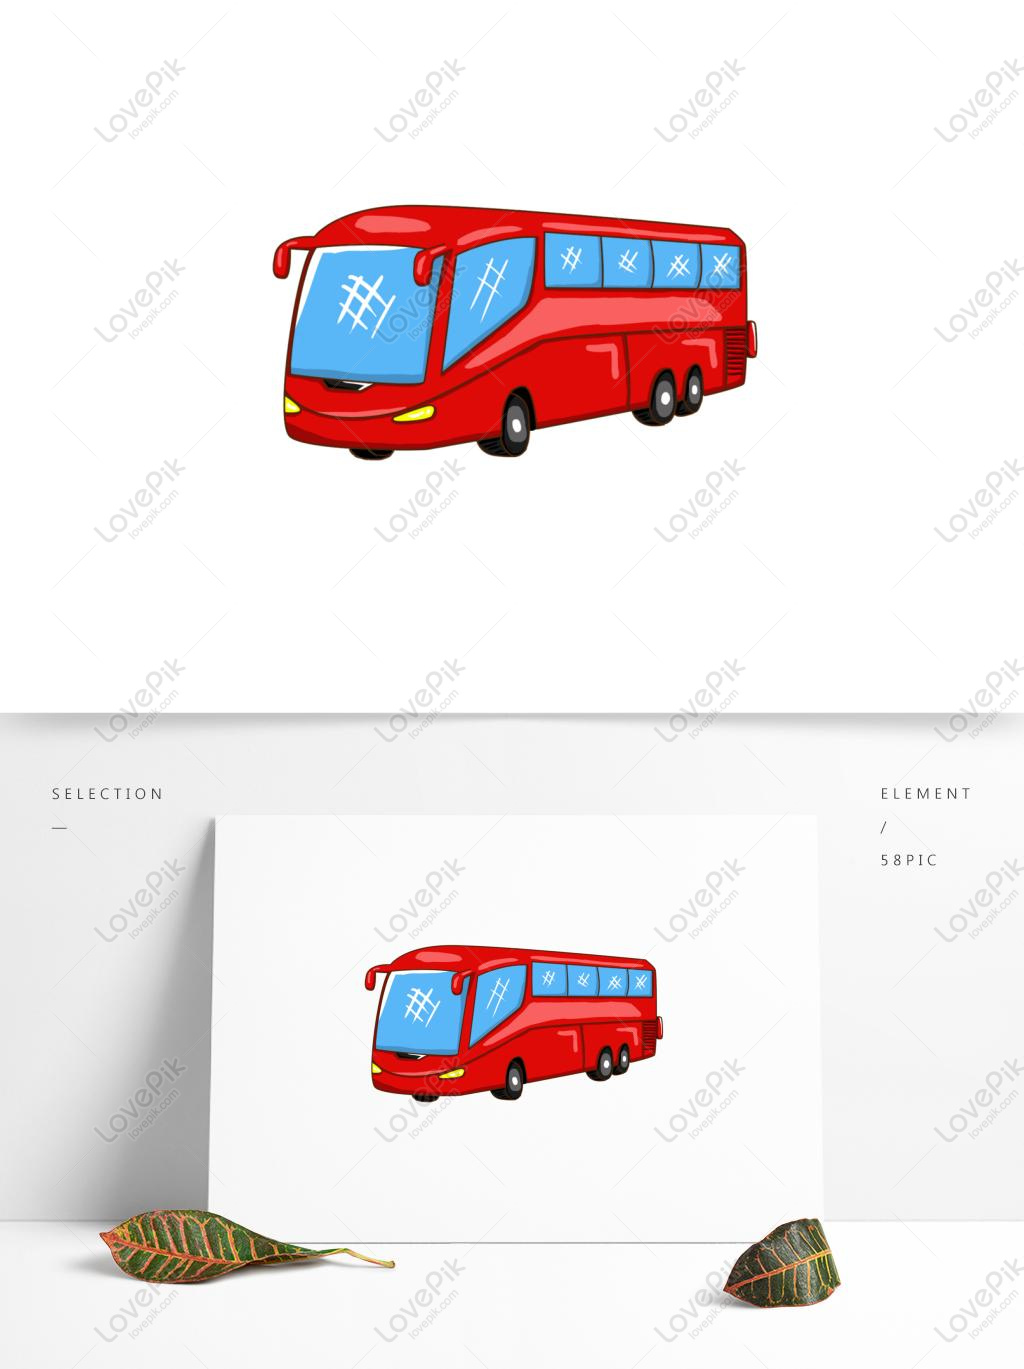 Xe buýt đỏ chắc chắn sẽ làm say đắm lòng người khi được chiêm ngưỡng qua hình ảnh. Với màu sắc tươi tắn và nổi bật, những chiếc xe này sẽ gợi nhớ đến kỷ niệm và con đường tuổi trẻ.